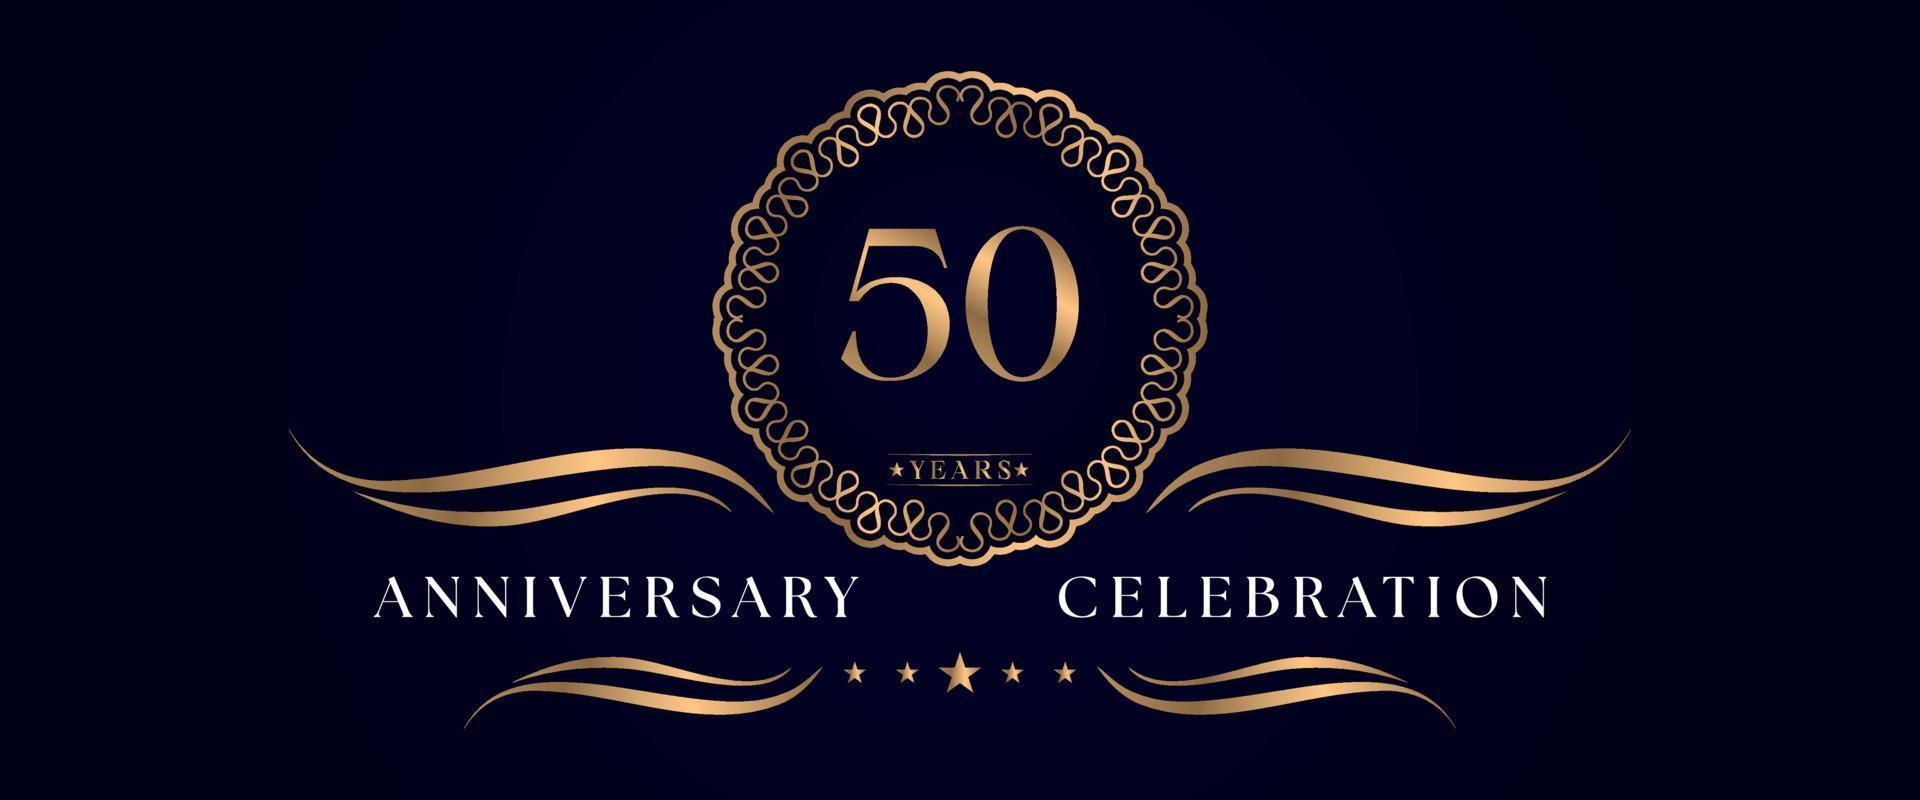 Celebrazione dell'anniversario di 50 anni con elegante cornice circolare isolata su sfondo blu scuro. disegno vettoriale per biglietto di auguri, festa di compleanno, matrimonio, festa evento, cerimonia. Logo dell'anniversario di 50 anni.